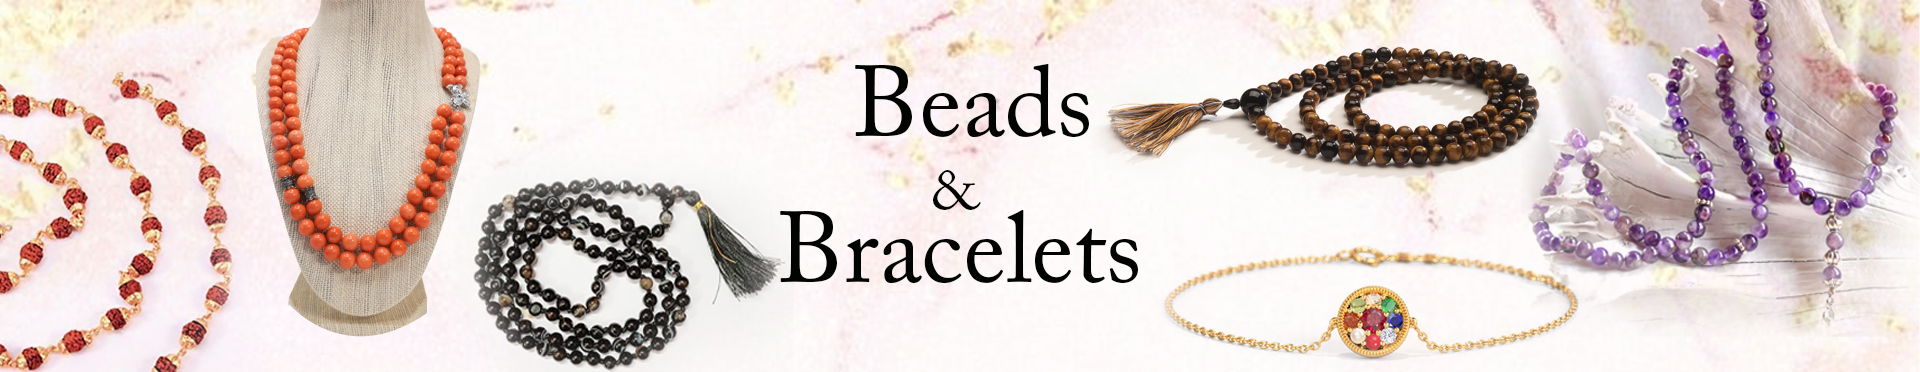 Beads & Bracelets